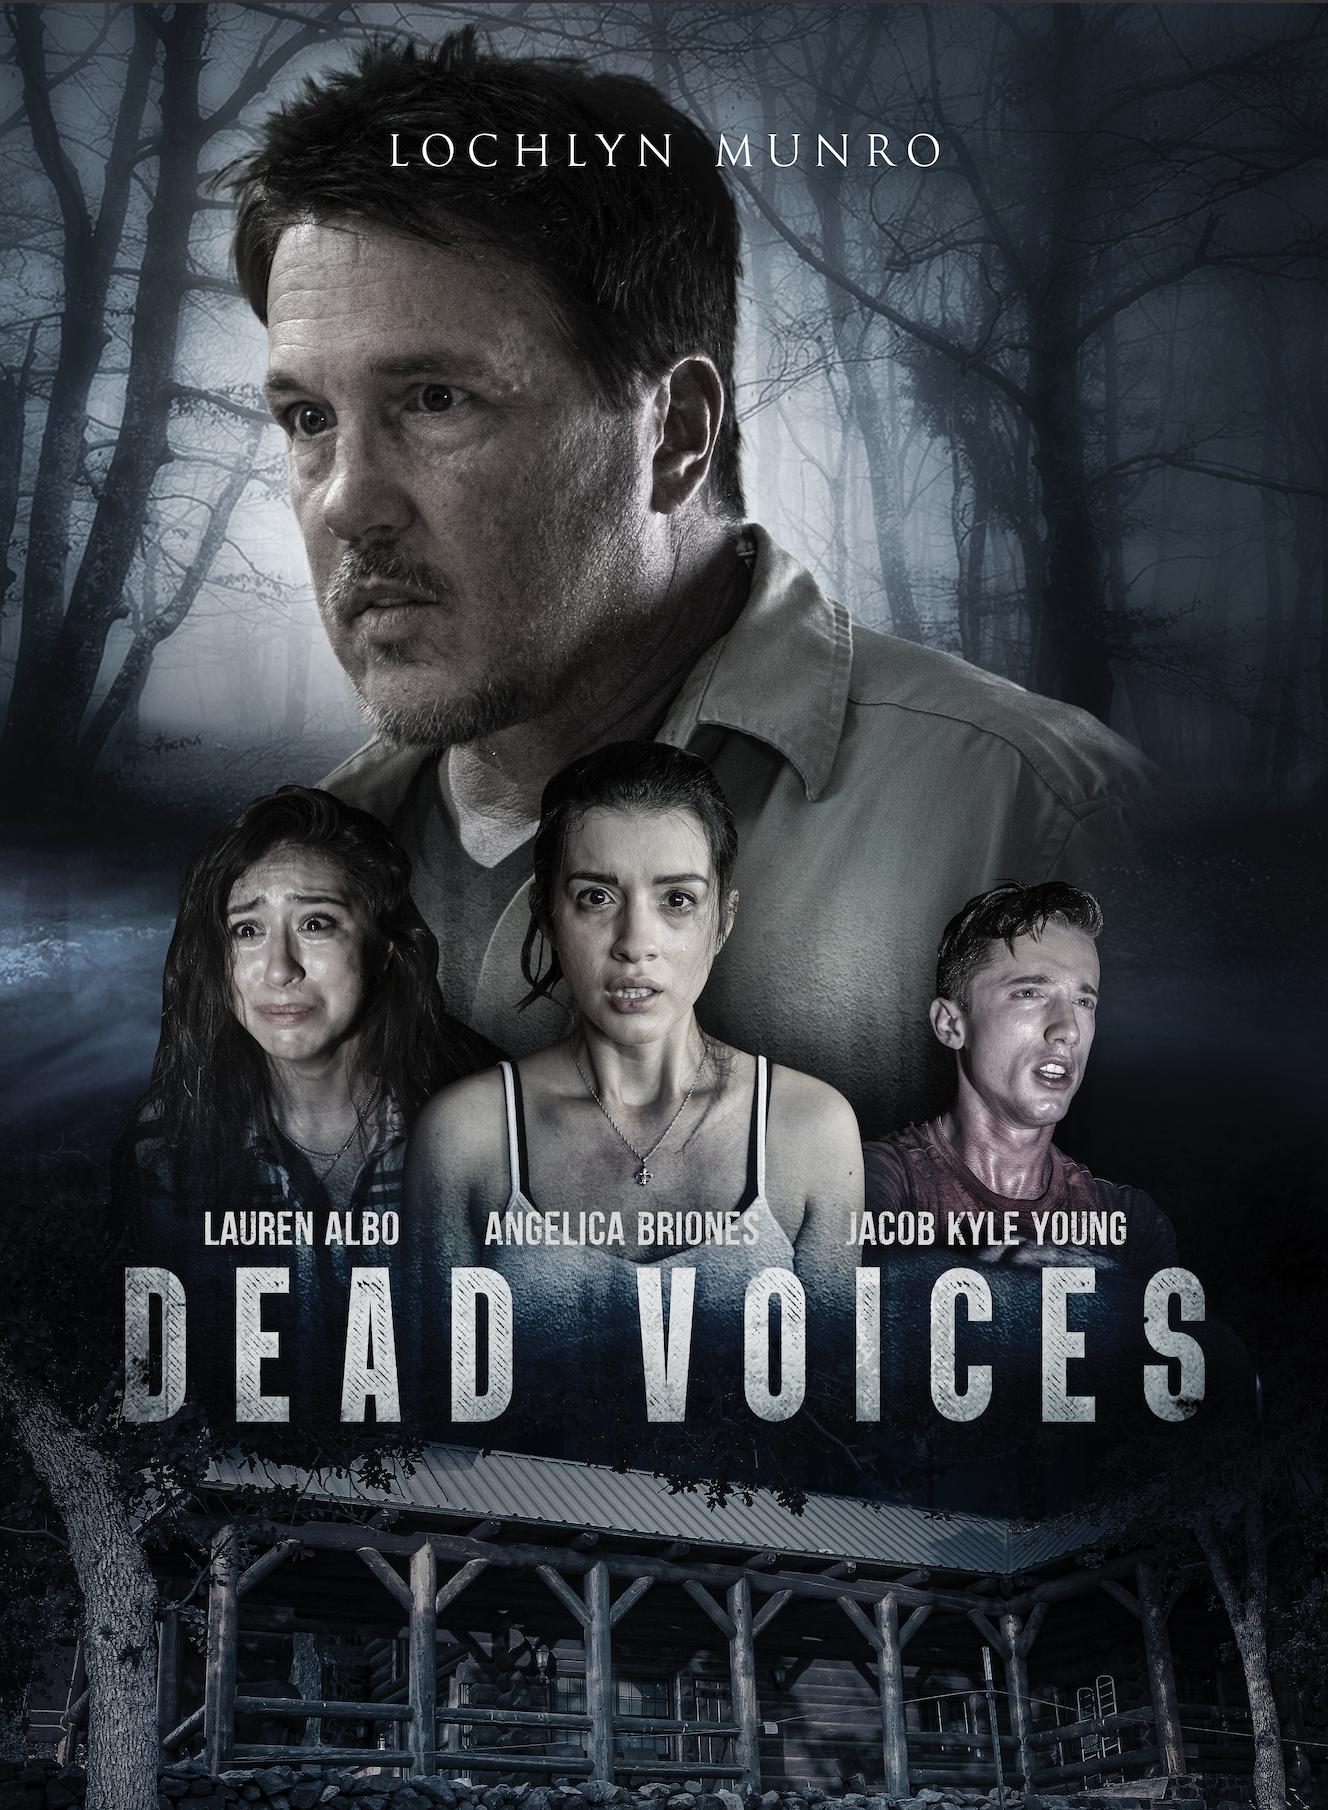 Nonton film Dead Voices layarkaca21 indoxx1 ganool online streaming terbaru